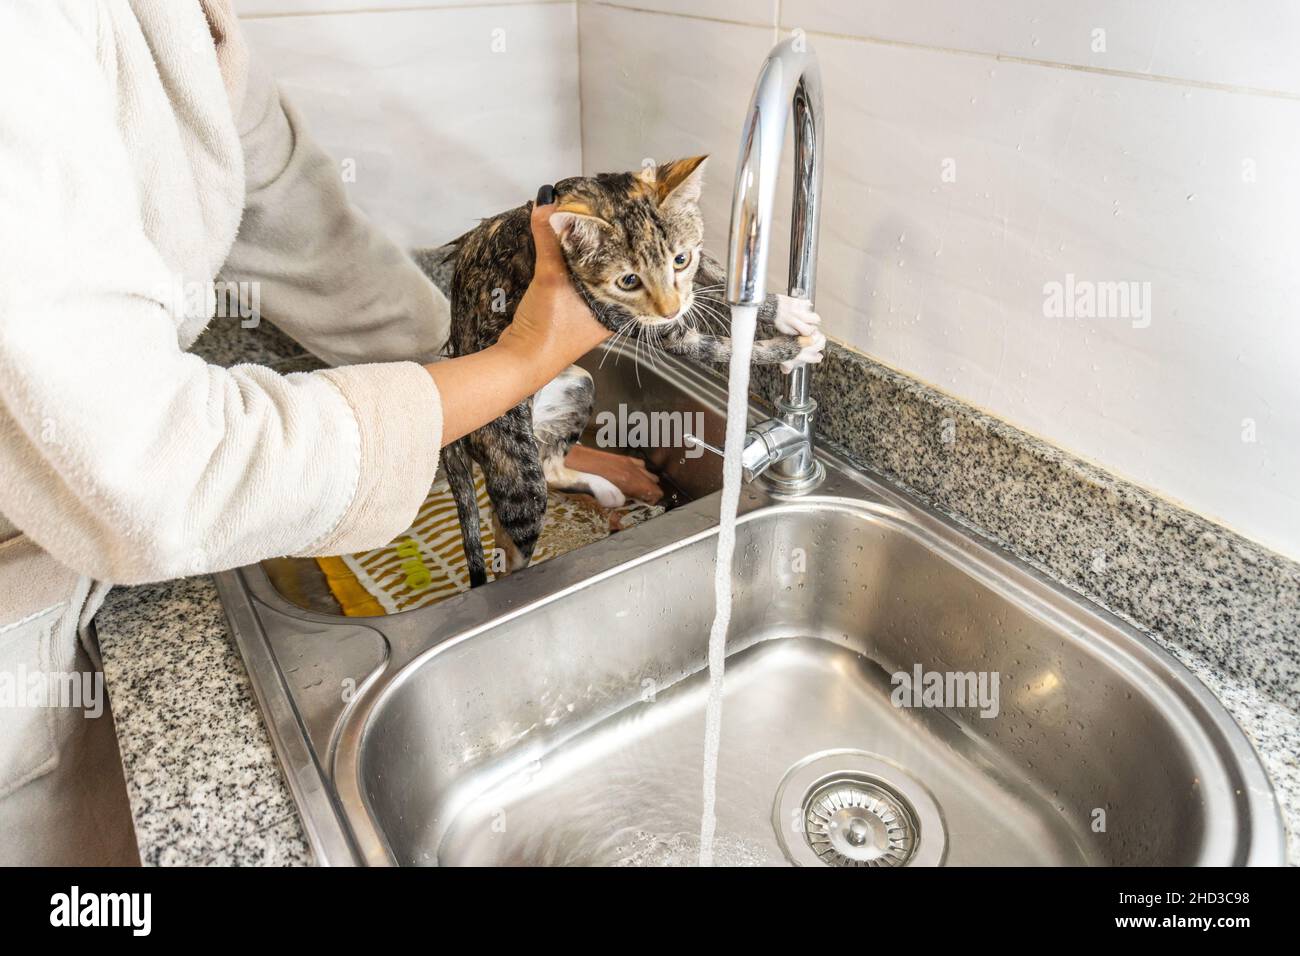 Manos de una persona irreconocible bañando a un gato gris en el lavavajillas de la cocina Foto de stock